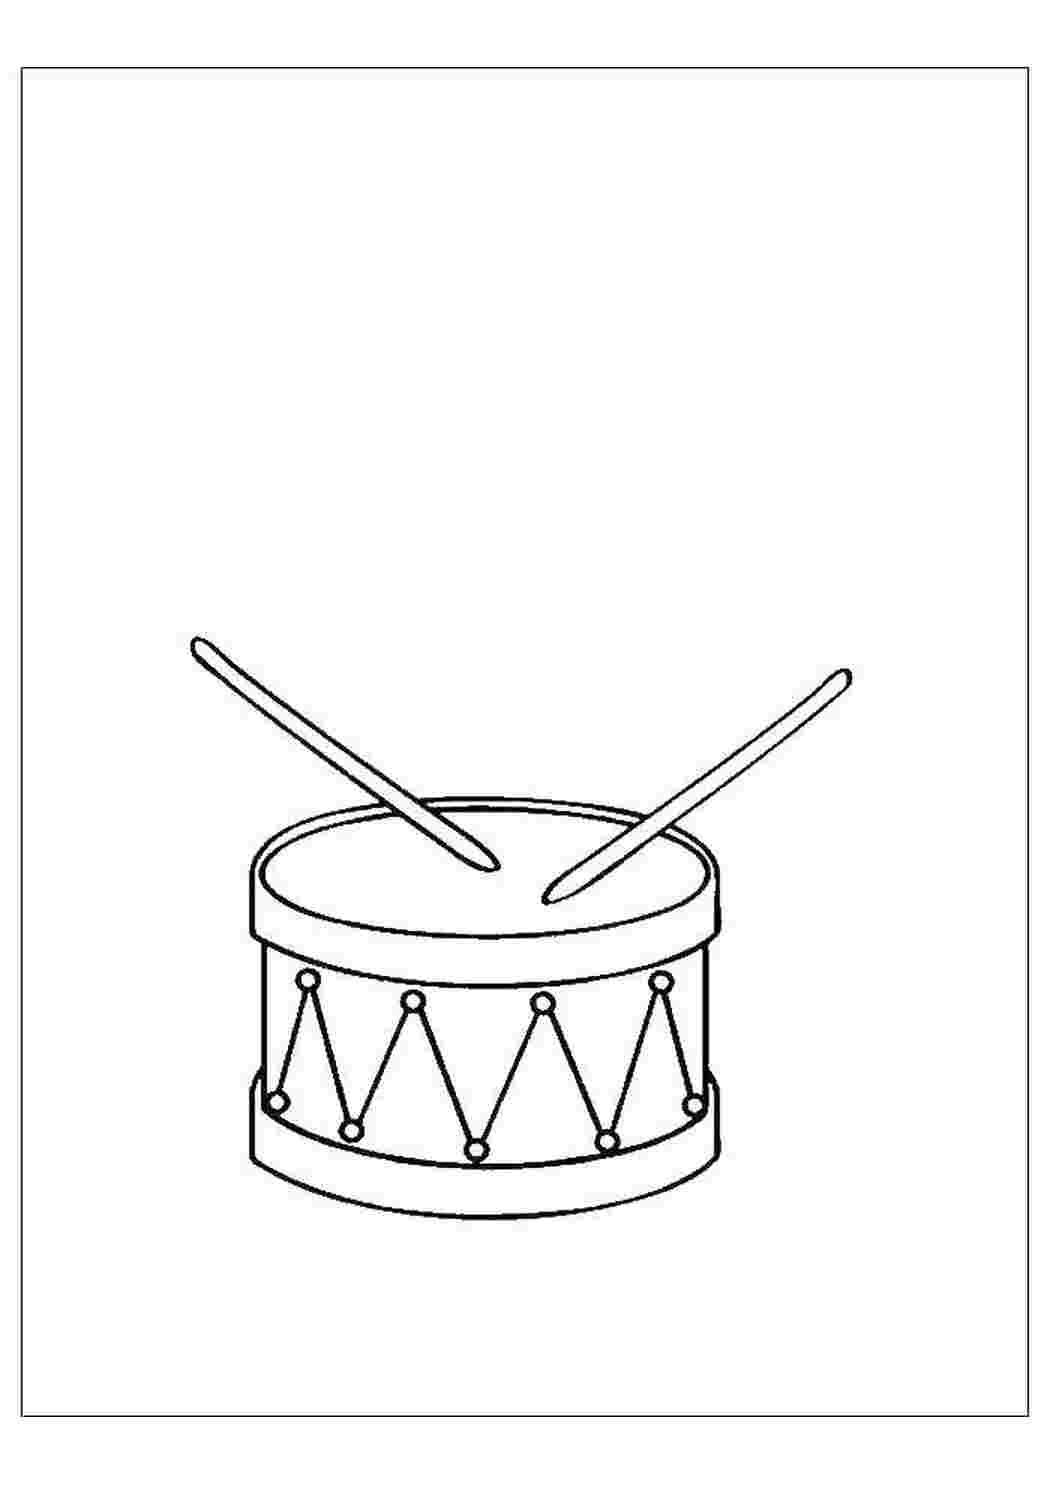 Нарисовать барабан